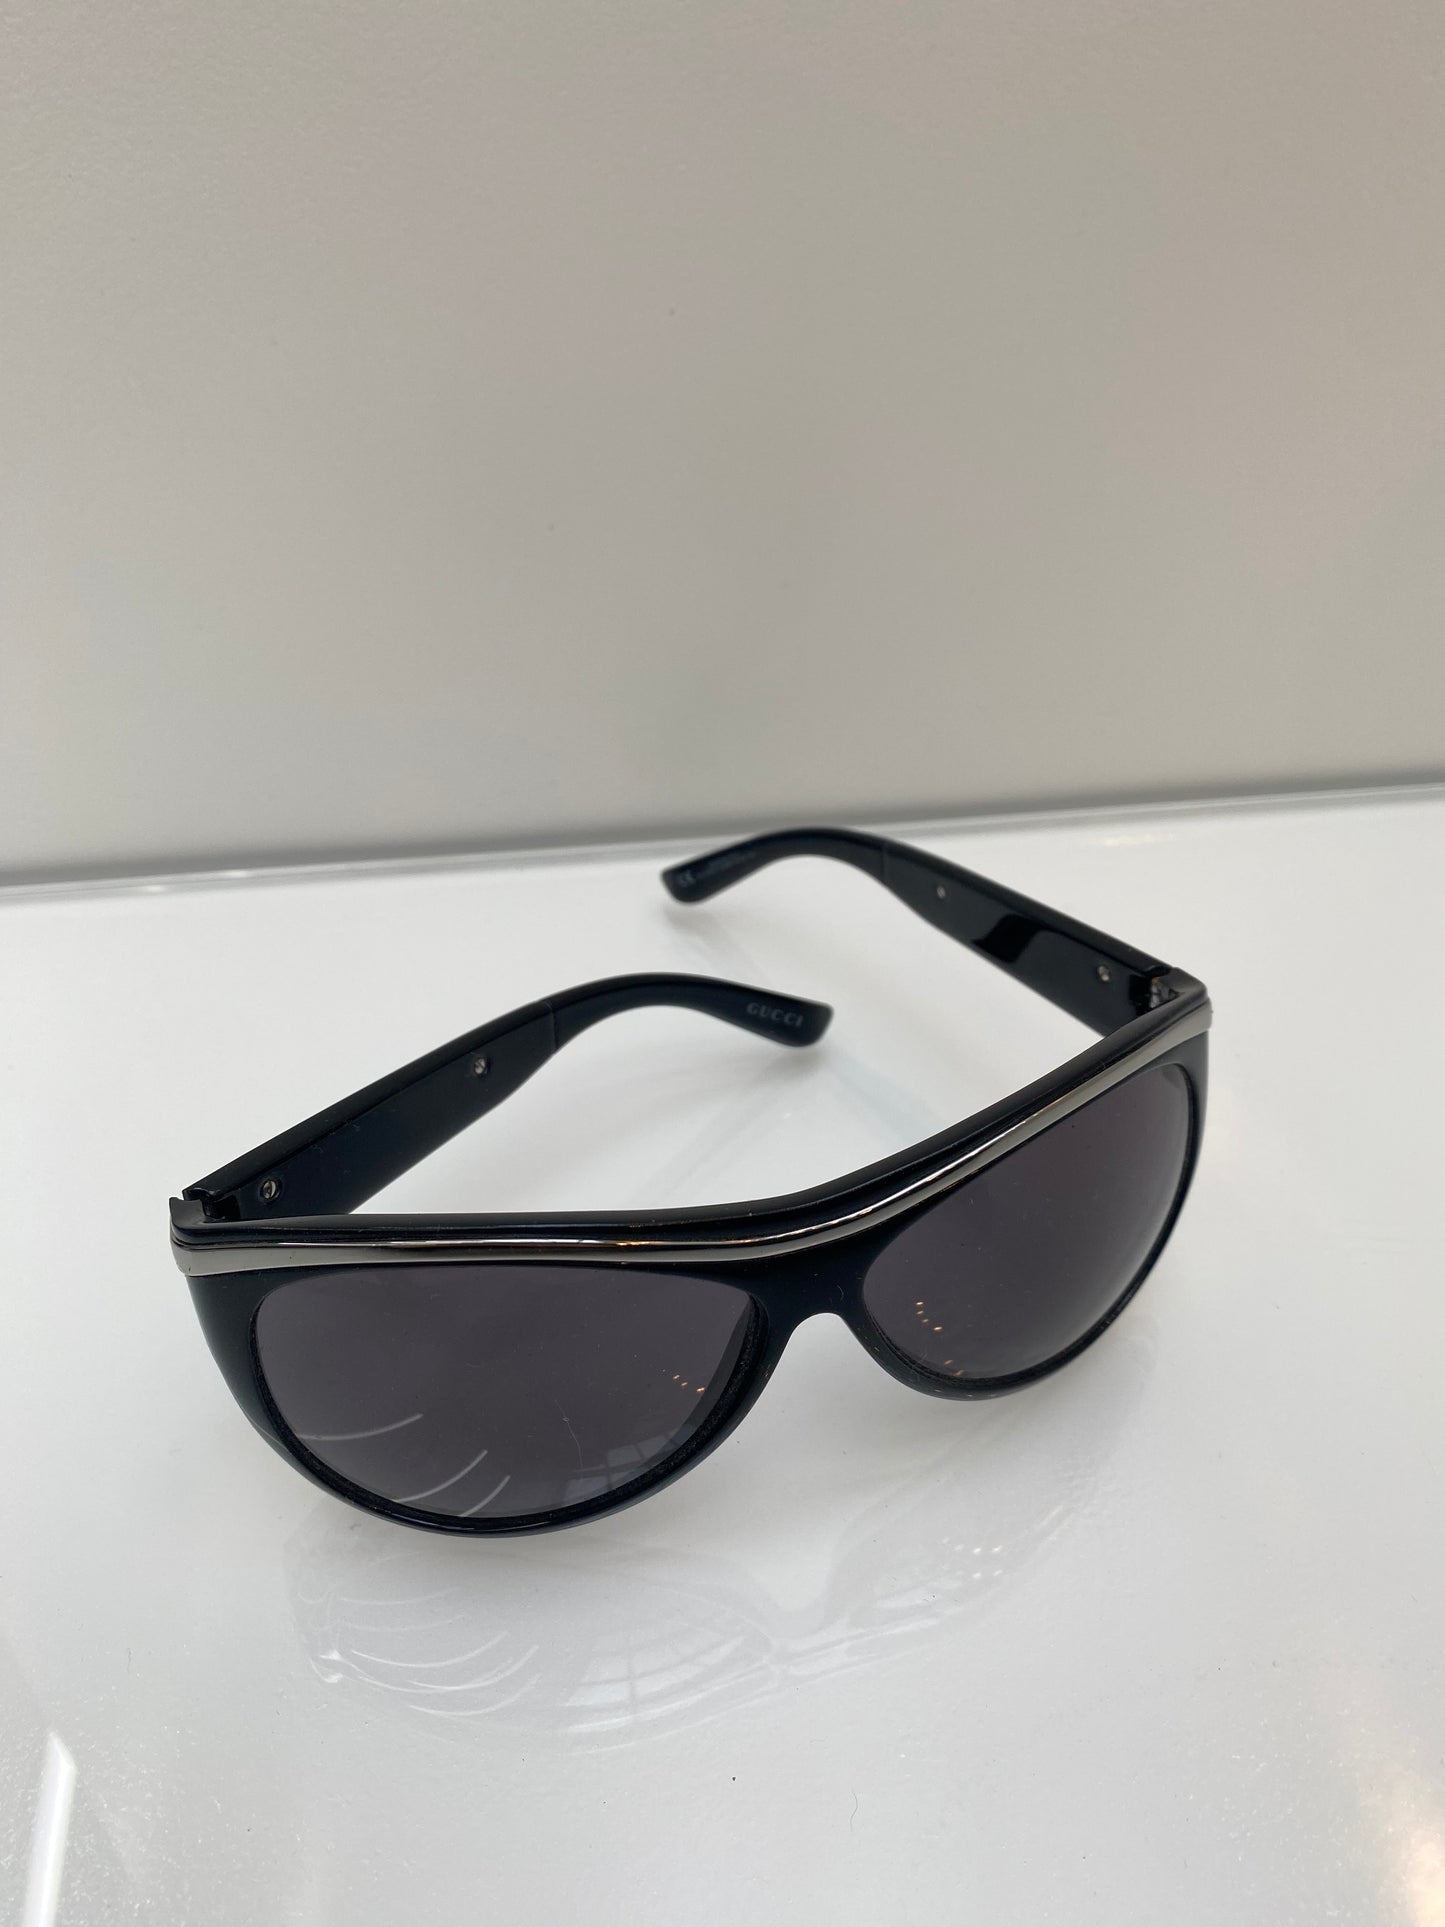 Gucci Sunglasses Black With Silver